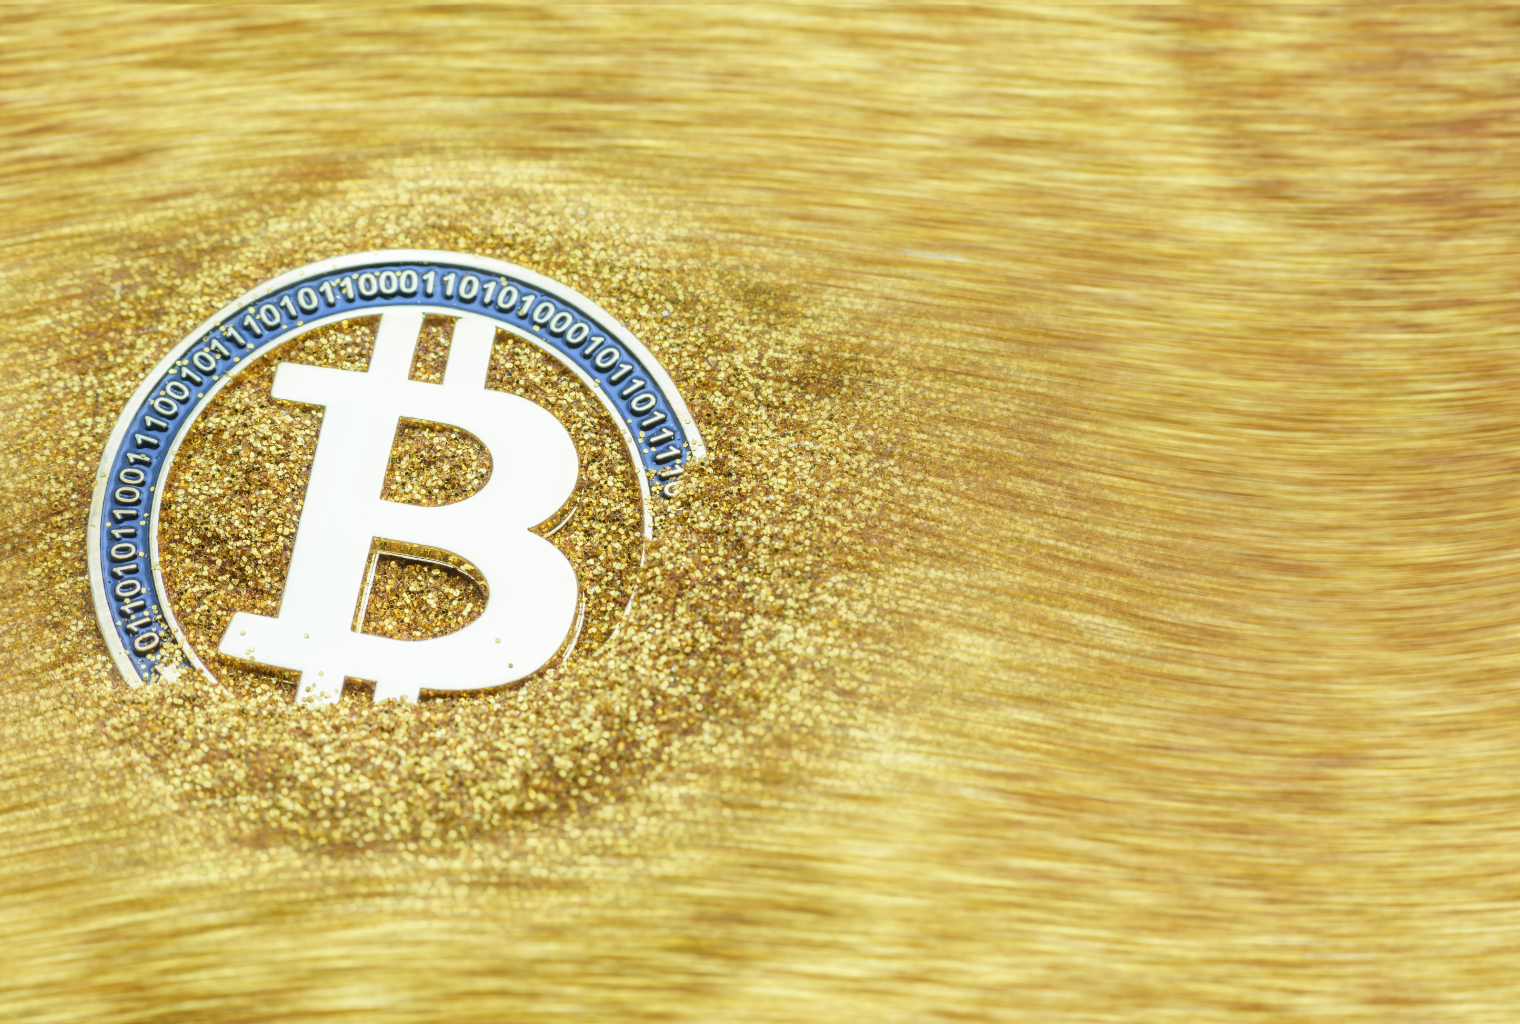 Mi az a Bitcoin - Tudd meg a LÉNYEGET a Bitcoin jelentéséről!